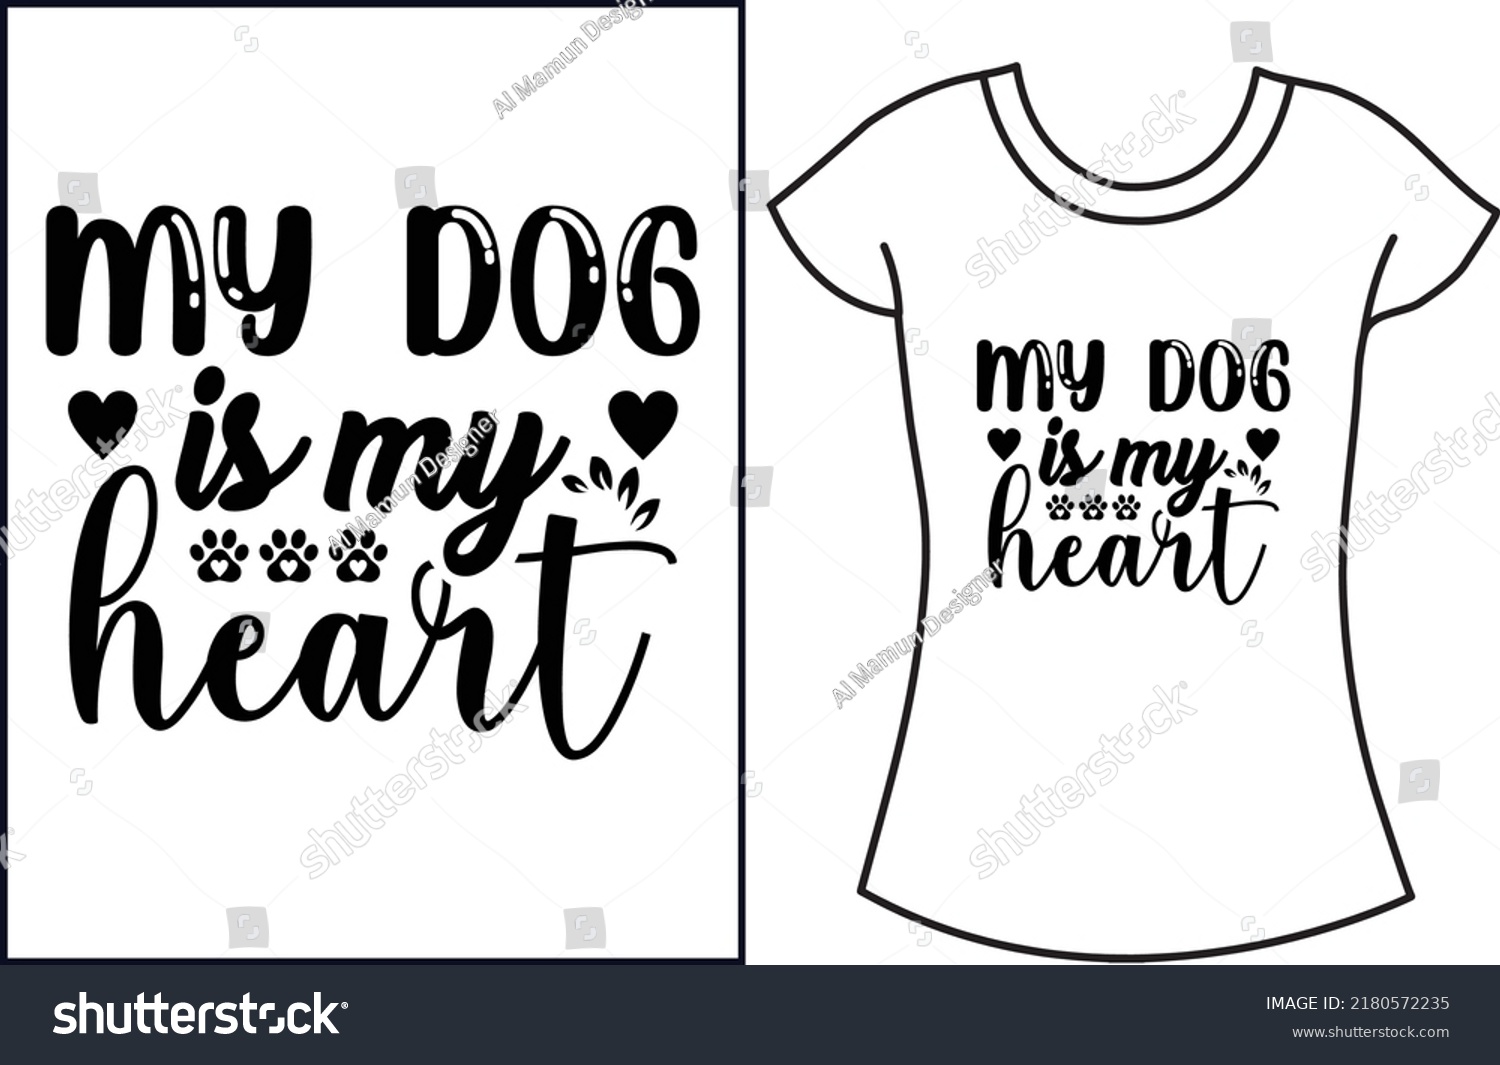 SVG of Dog svg t shirt design. Dog lover t shirt design gift for women. svg